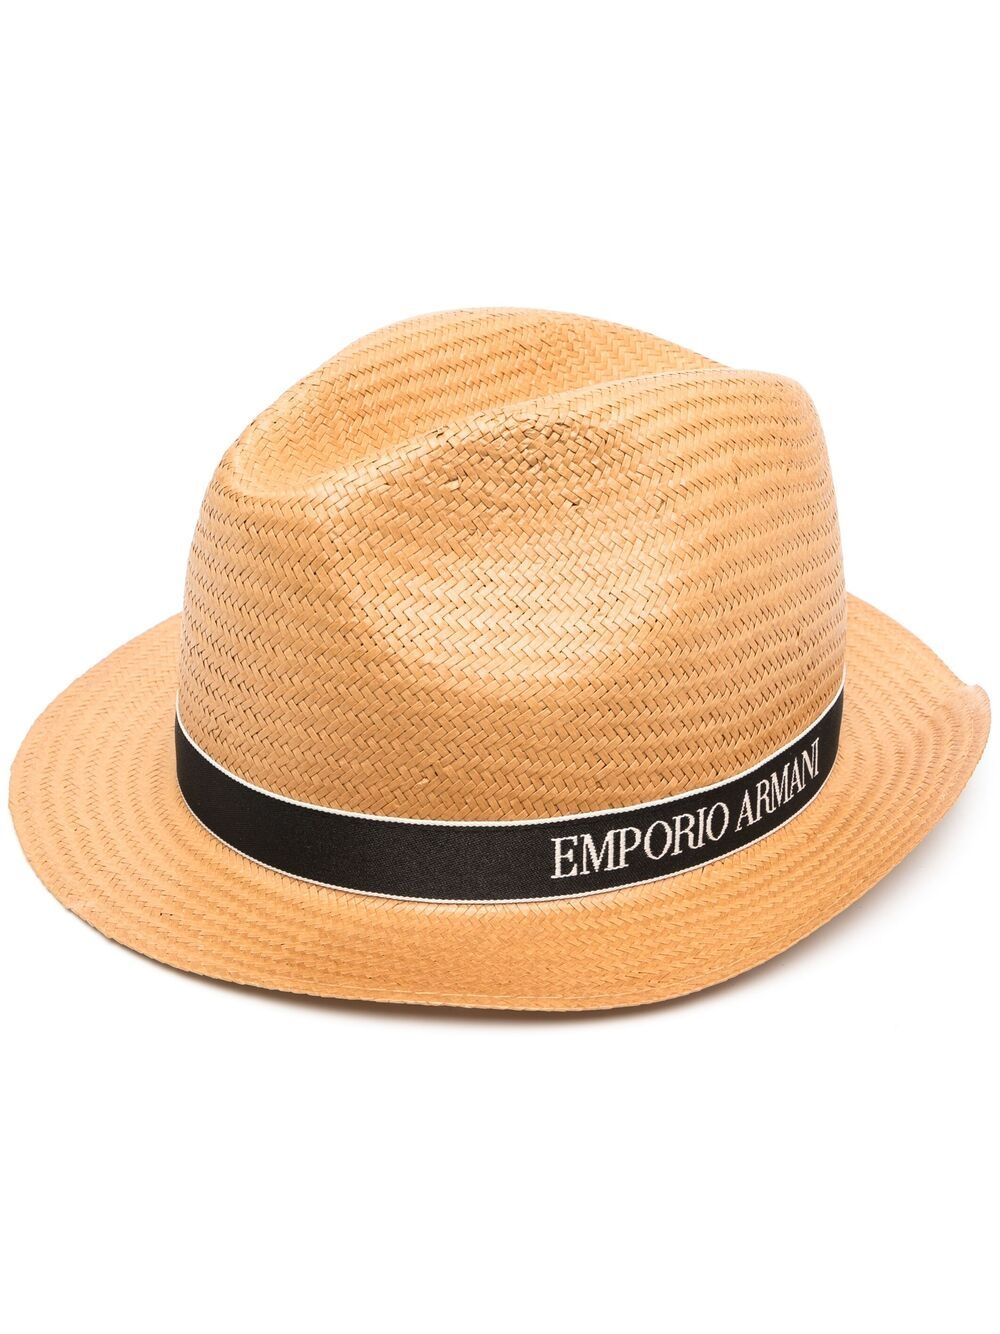 фото Emporio armani шляпа-федора с полосками и логотипом